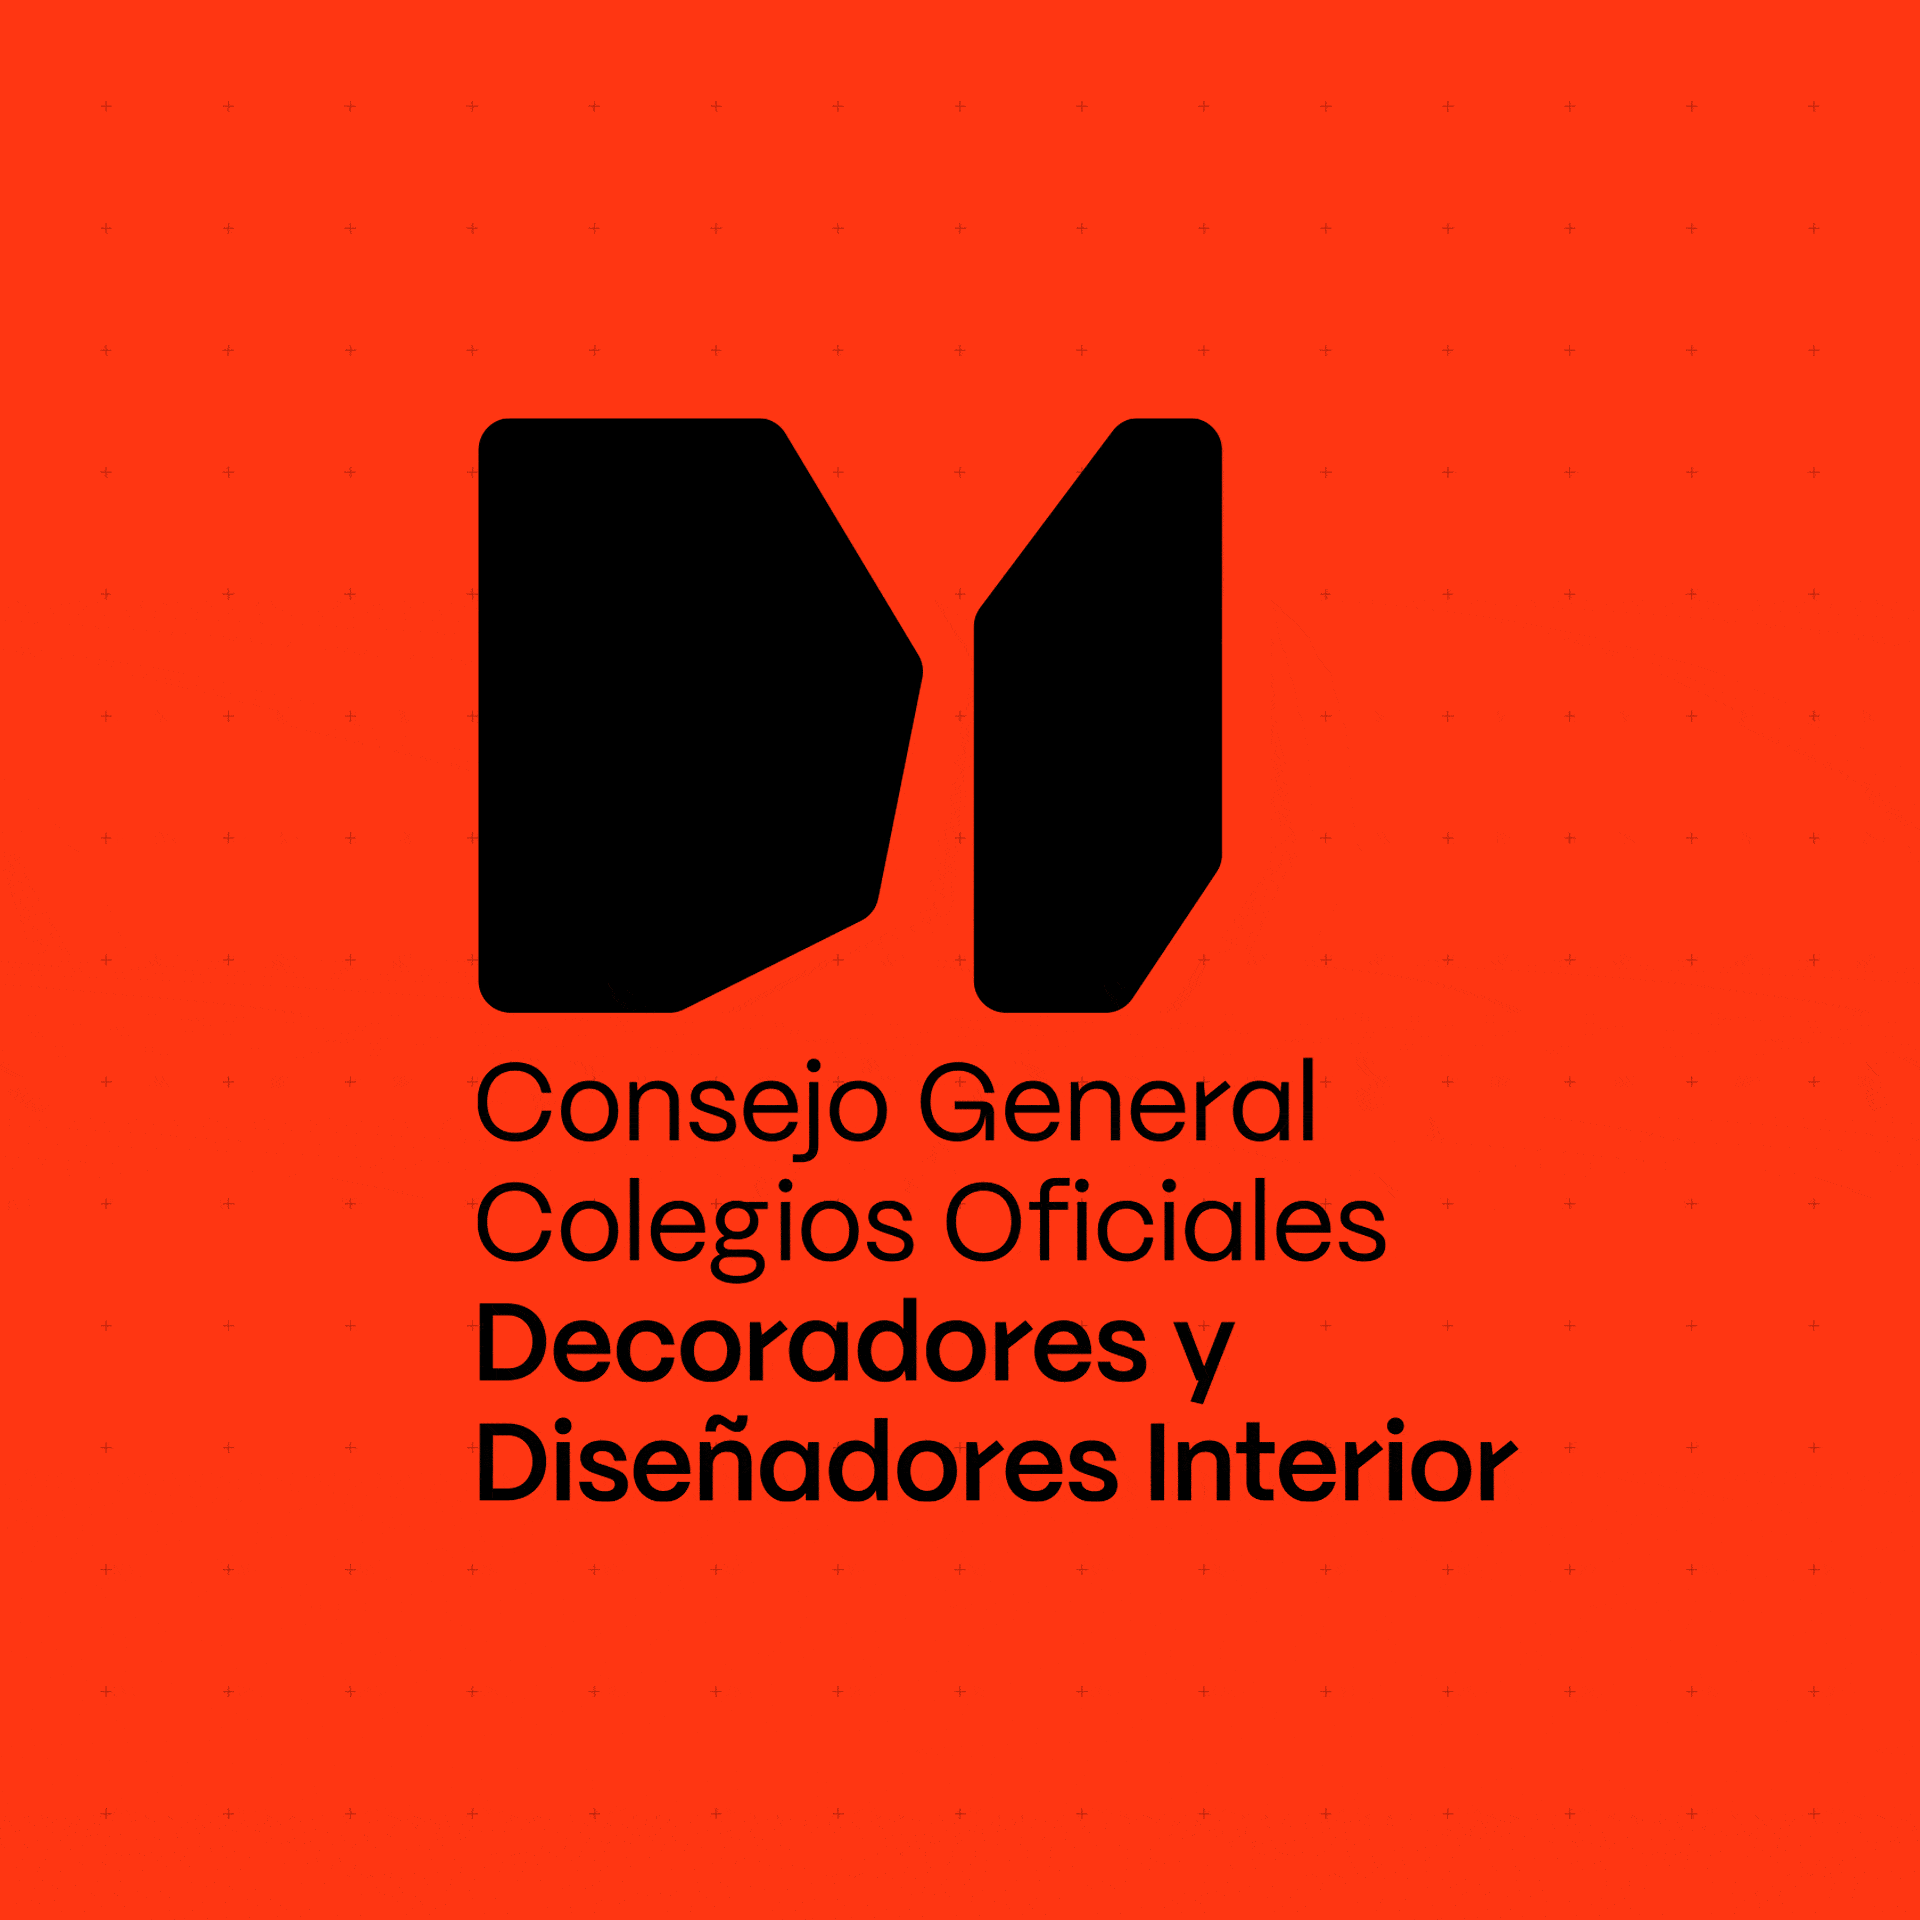 Consejo General Diseño Interior